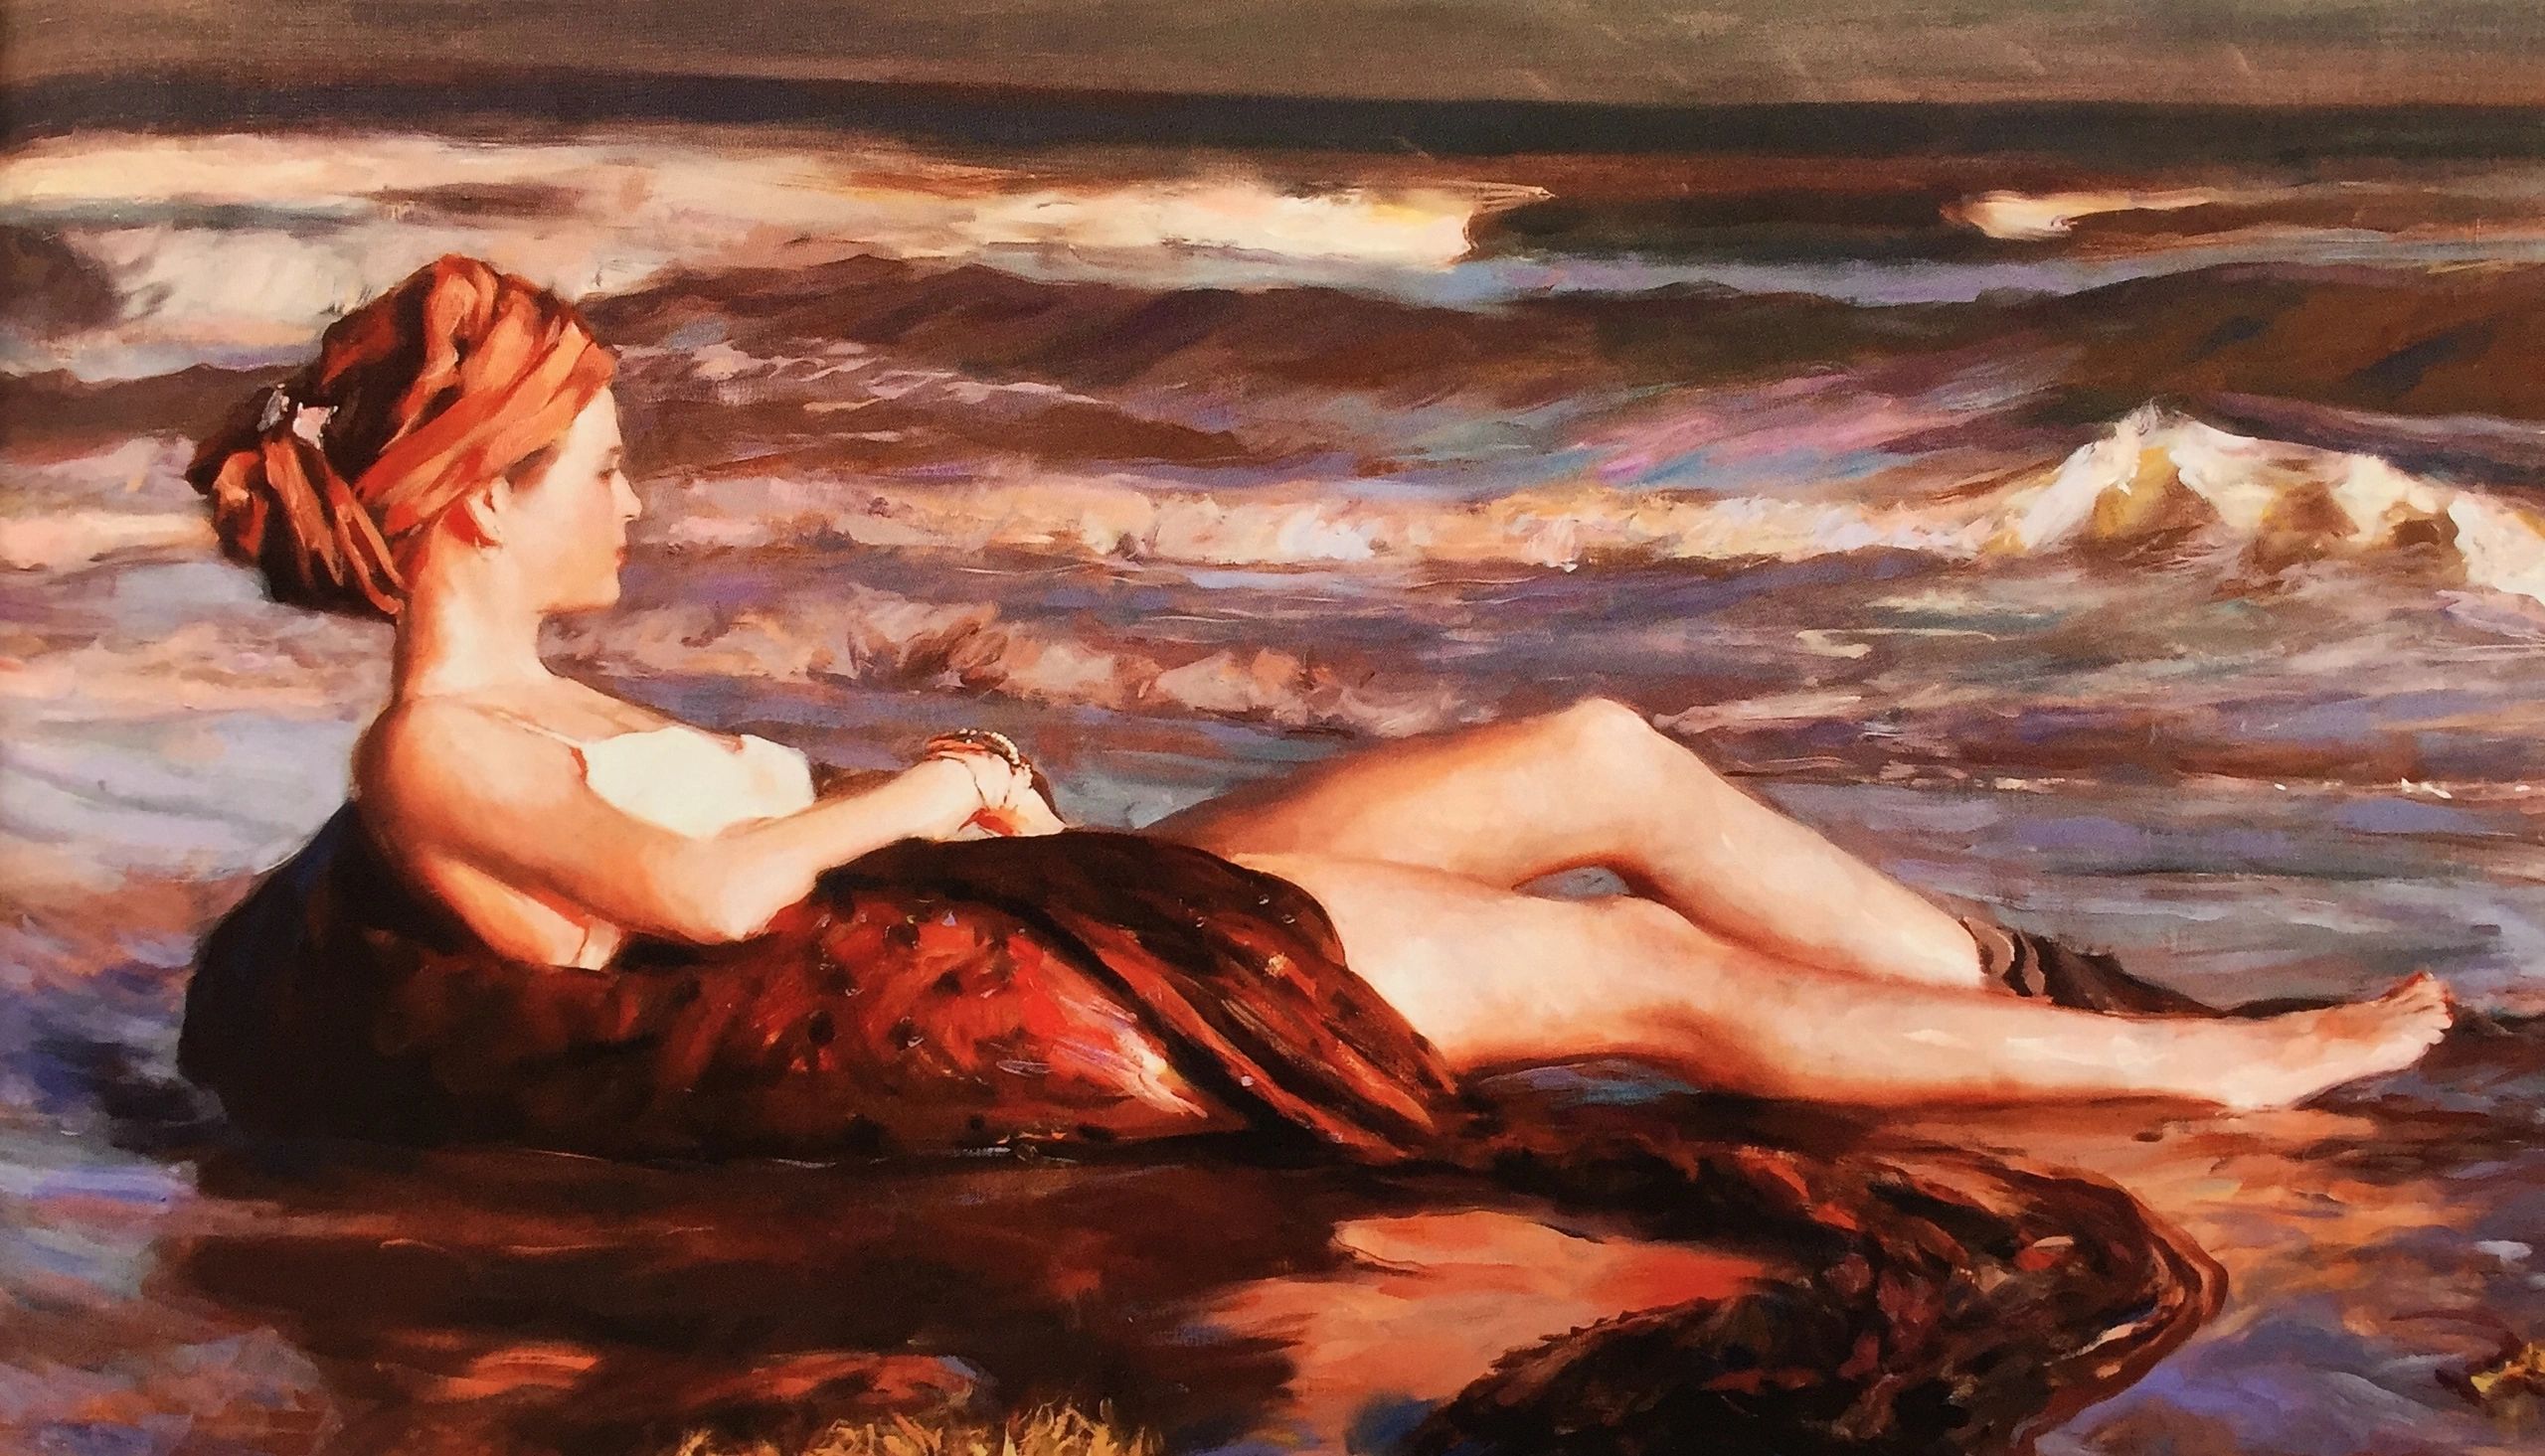 Woman is the surf by Glenn Harrington 